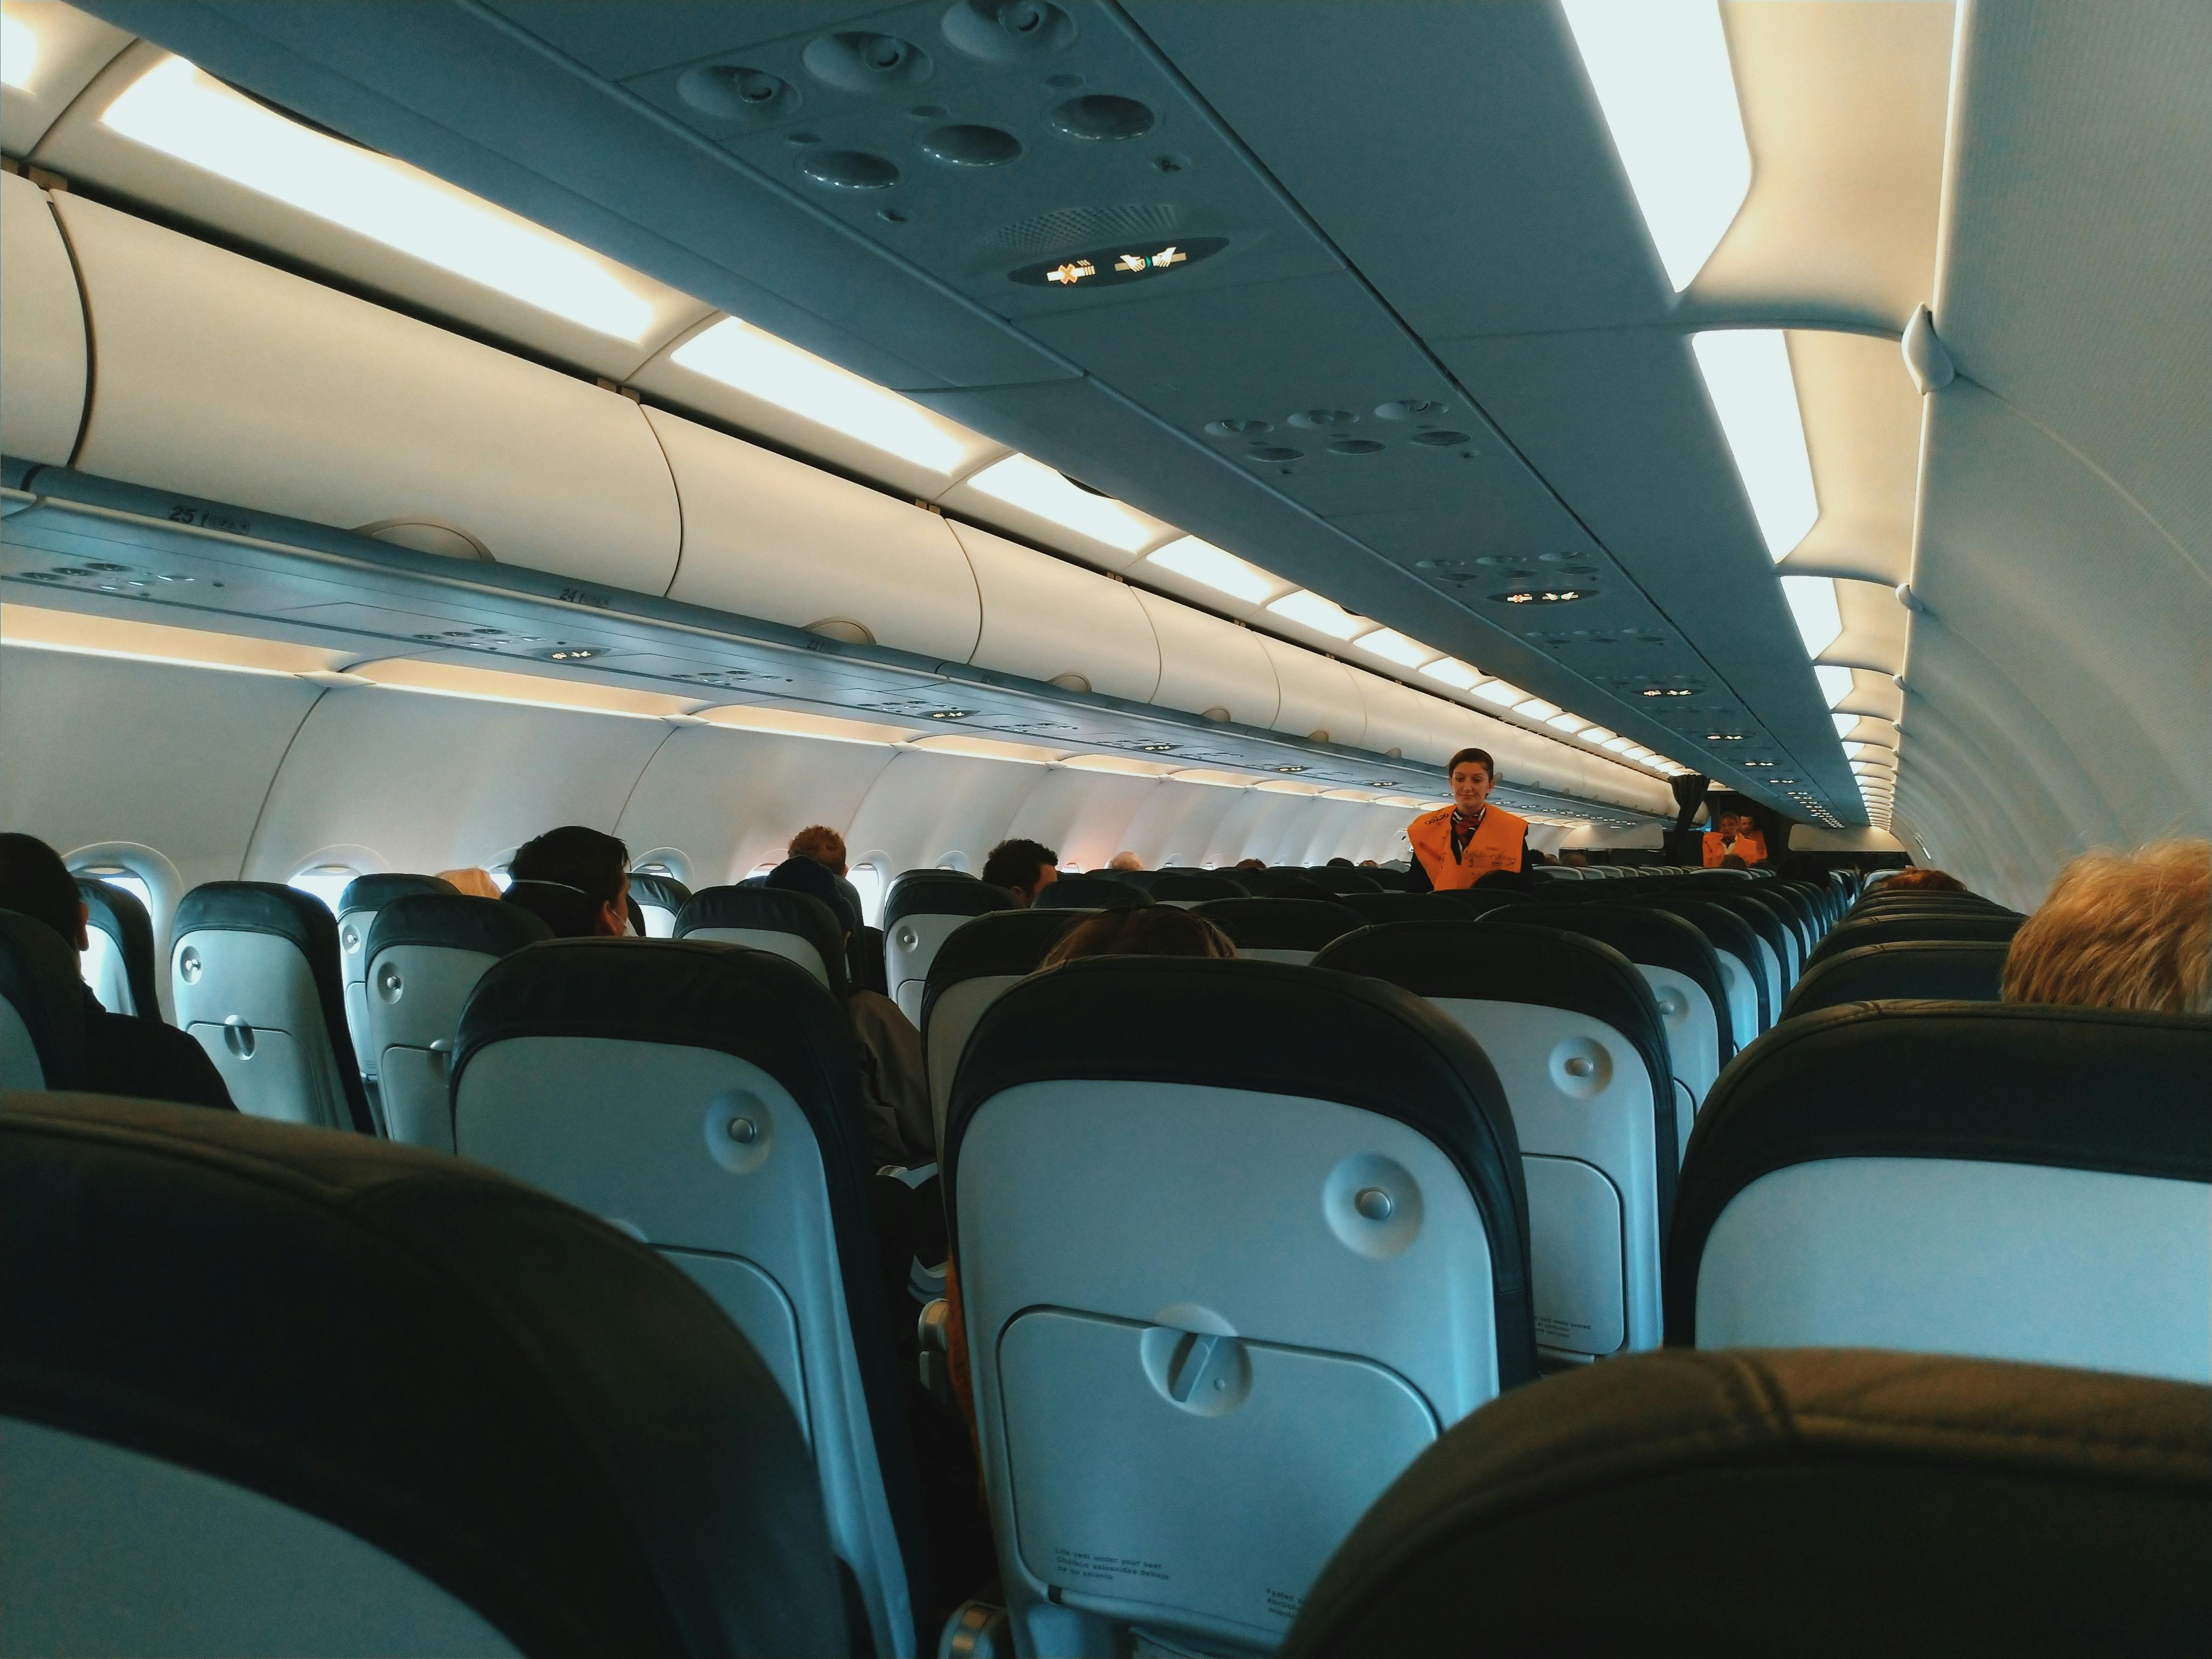 Une hôtesse de l'air marchant dans un avion | Source : Pexels